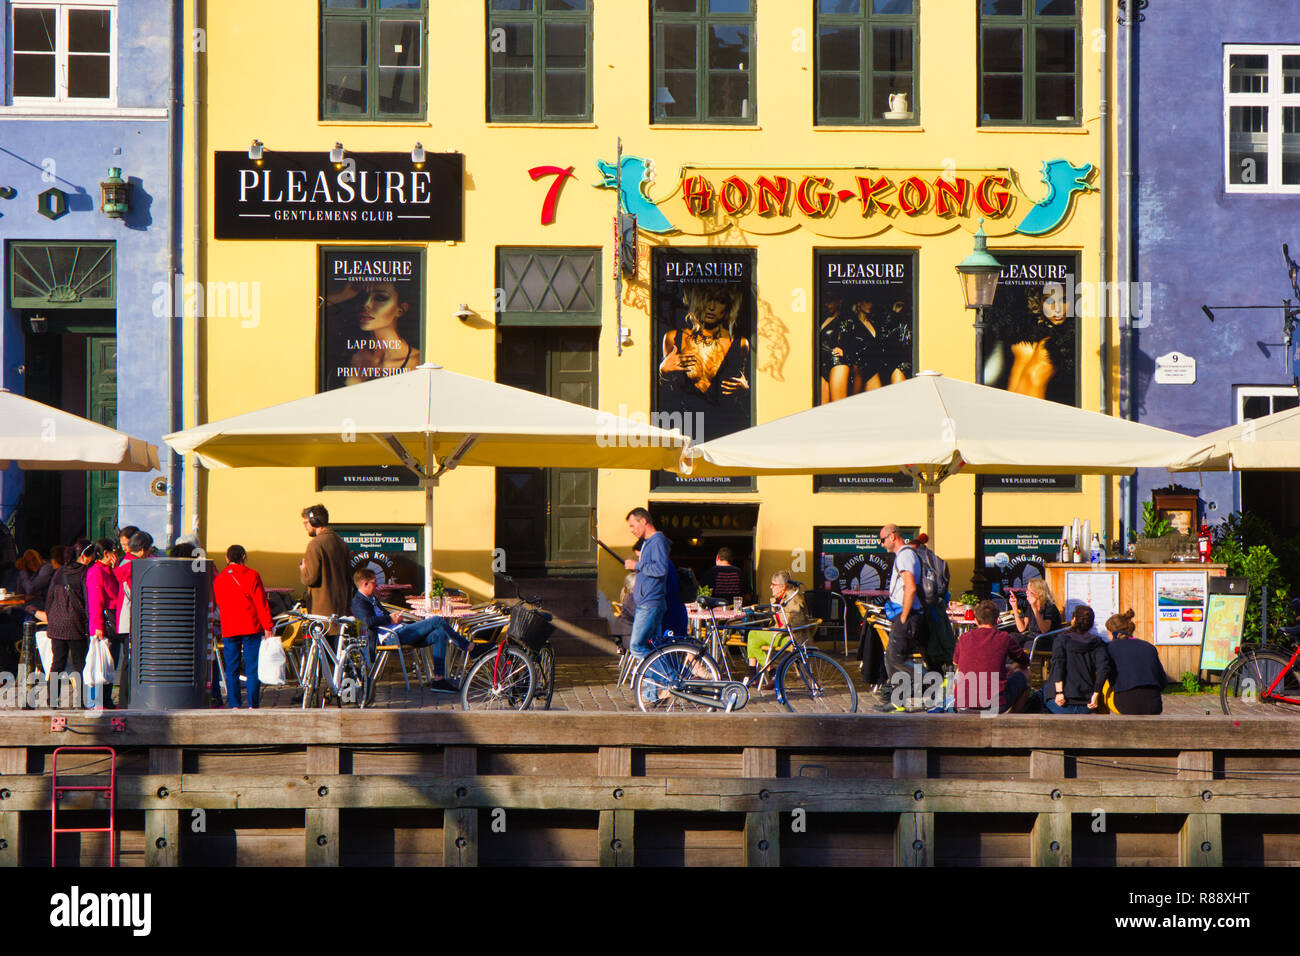 Pleasure gentlemen's strip club, Nyhavn, Copenhagen, Denmark, Scandinavia Stock Photo